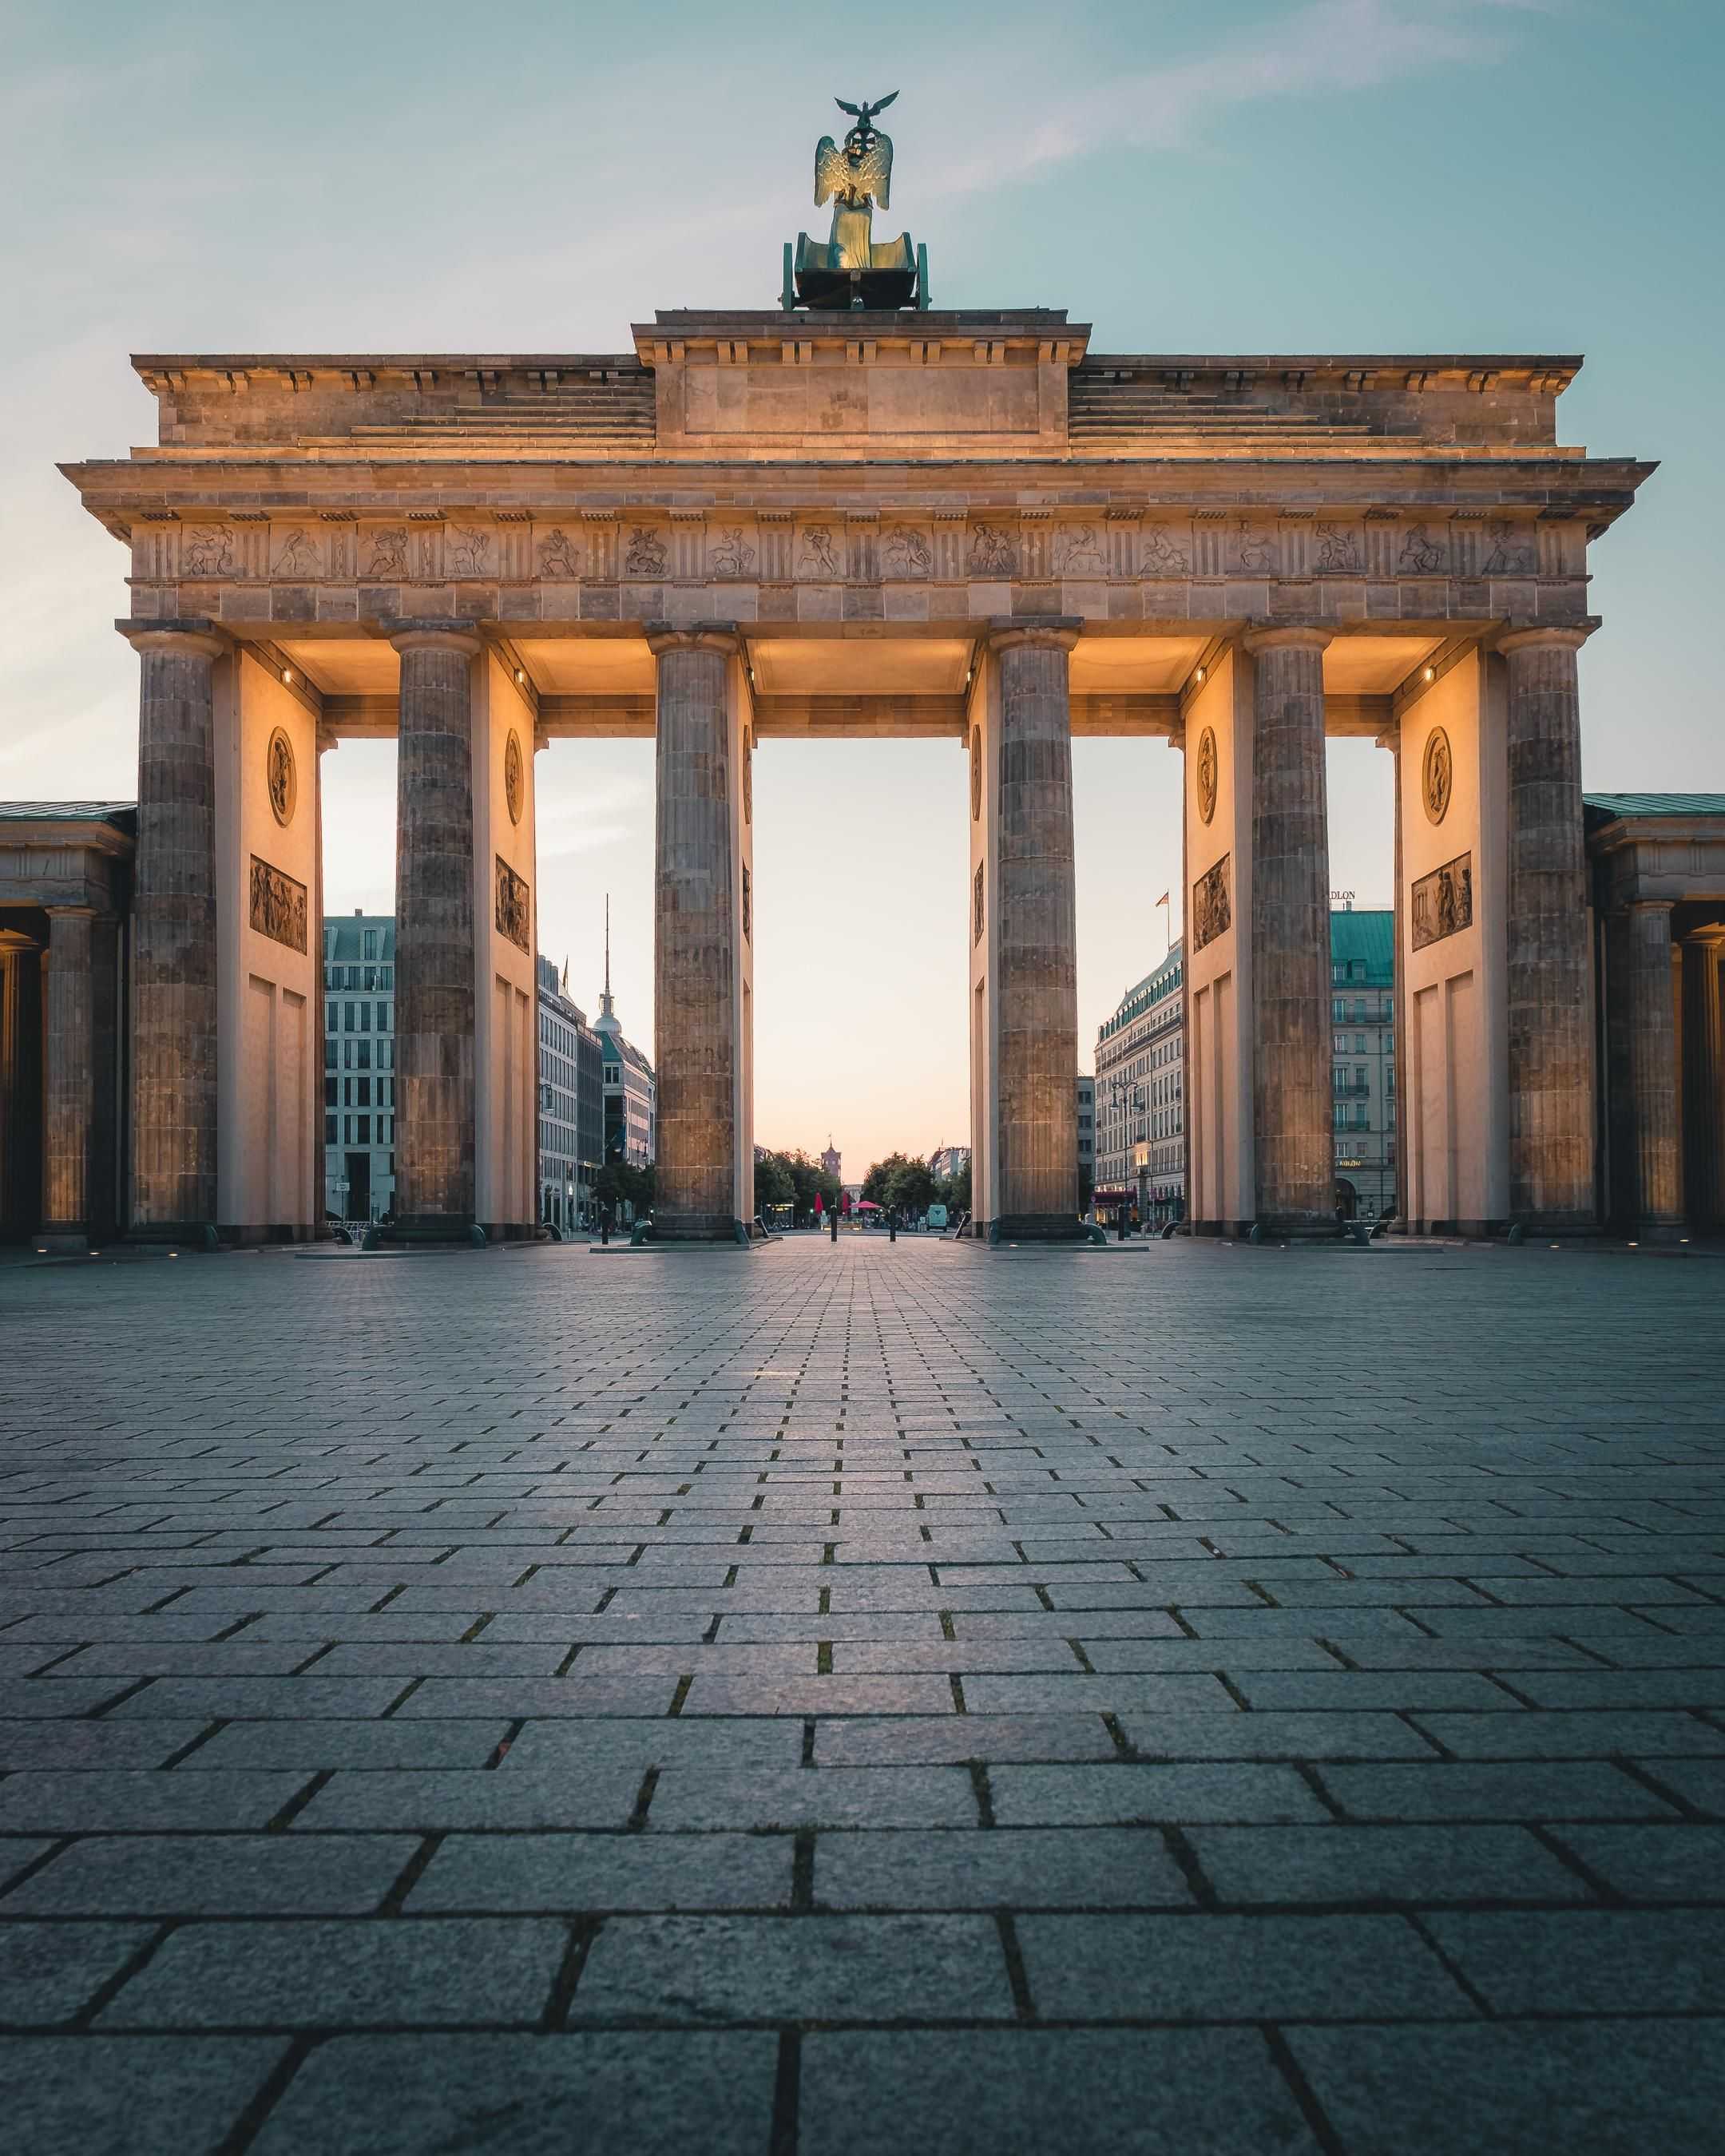 Бранденбургские ворота в берлине: история ворот, архитектура и значение в истории германии. cложная судьба великого монумента - бранденбургских ворот